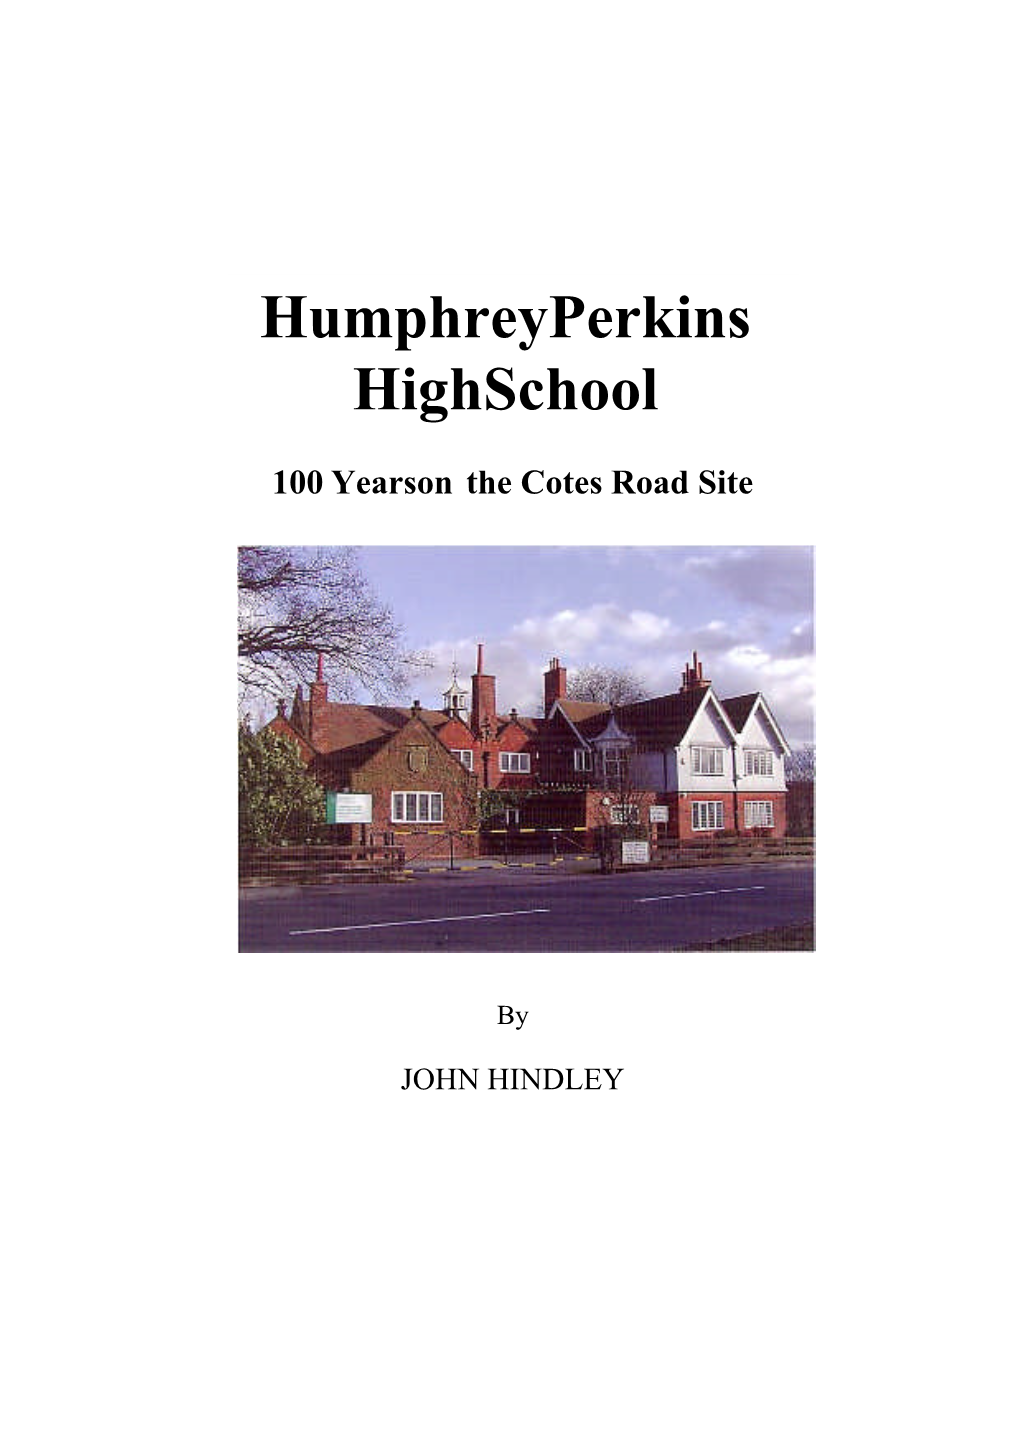 Humphreyperkins Highschool